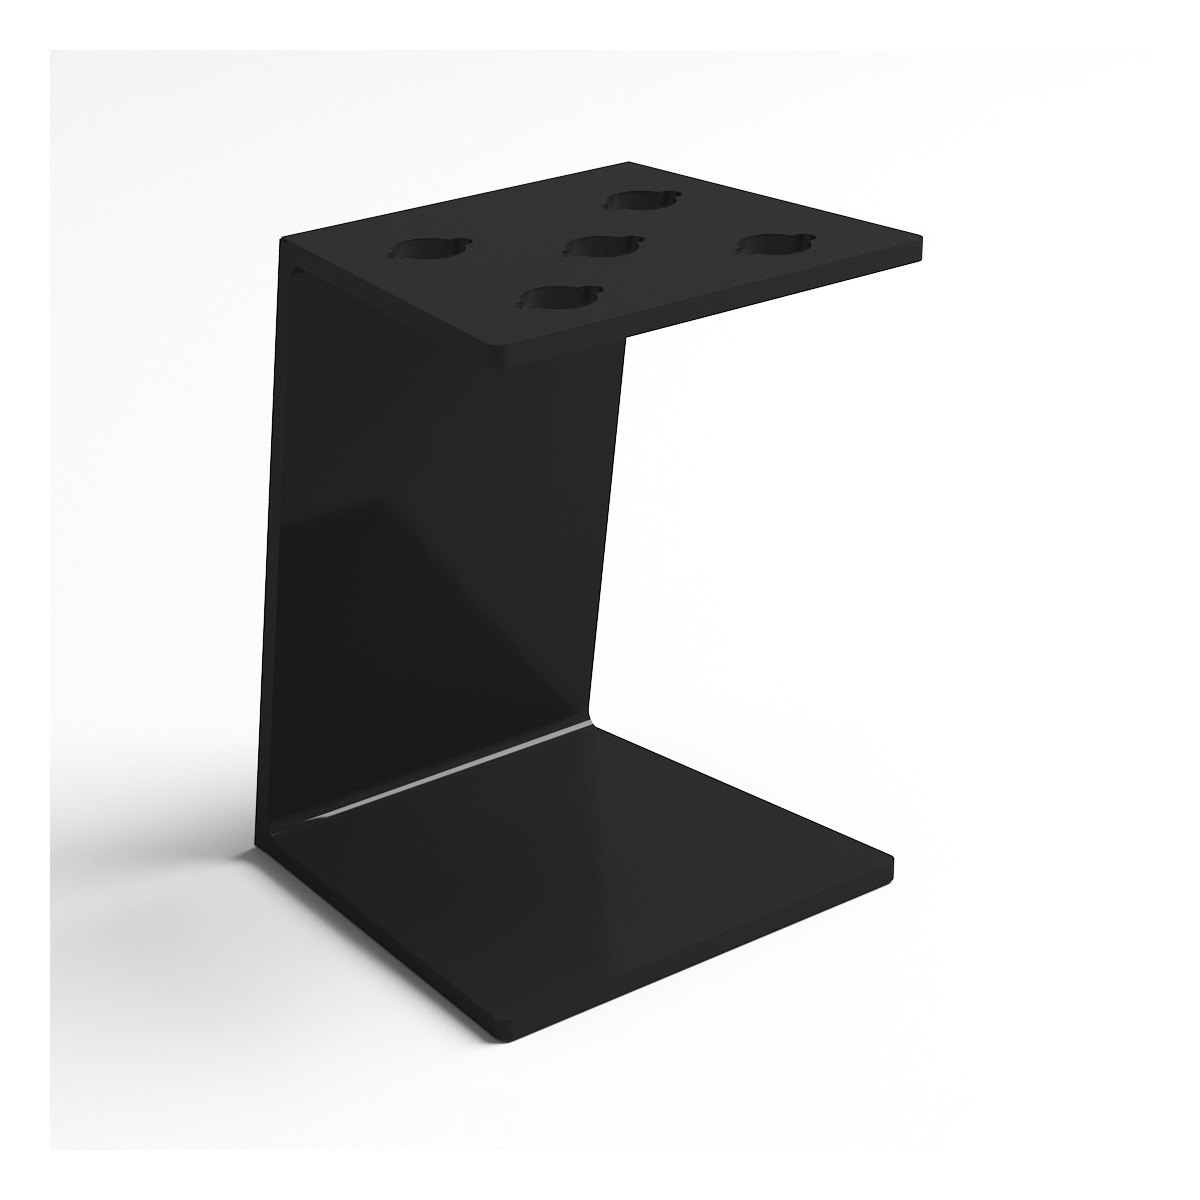 Portaforbici in plexiglass nero lucido con pannello inclinato